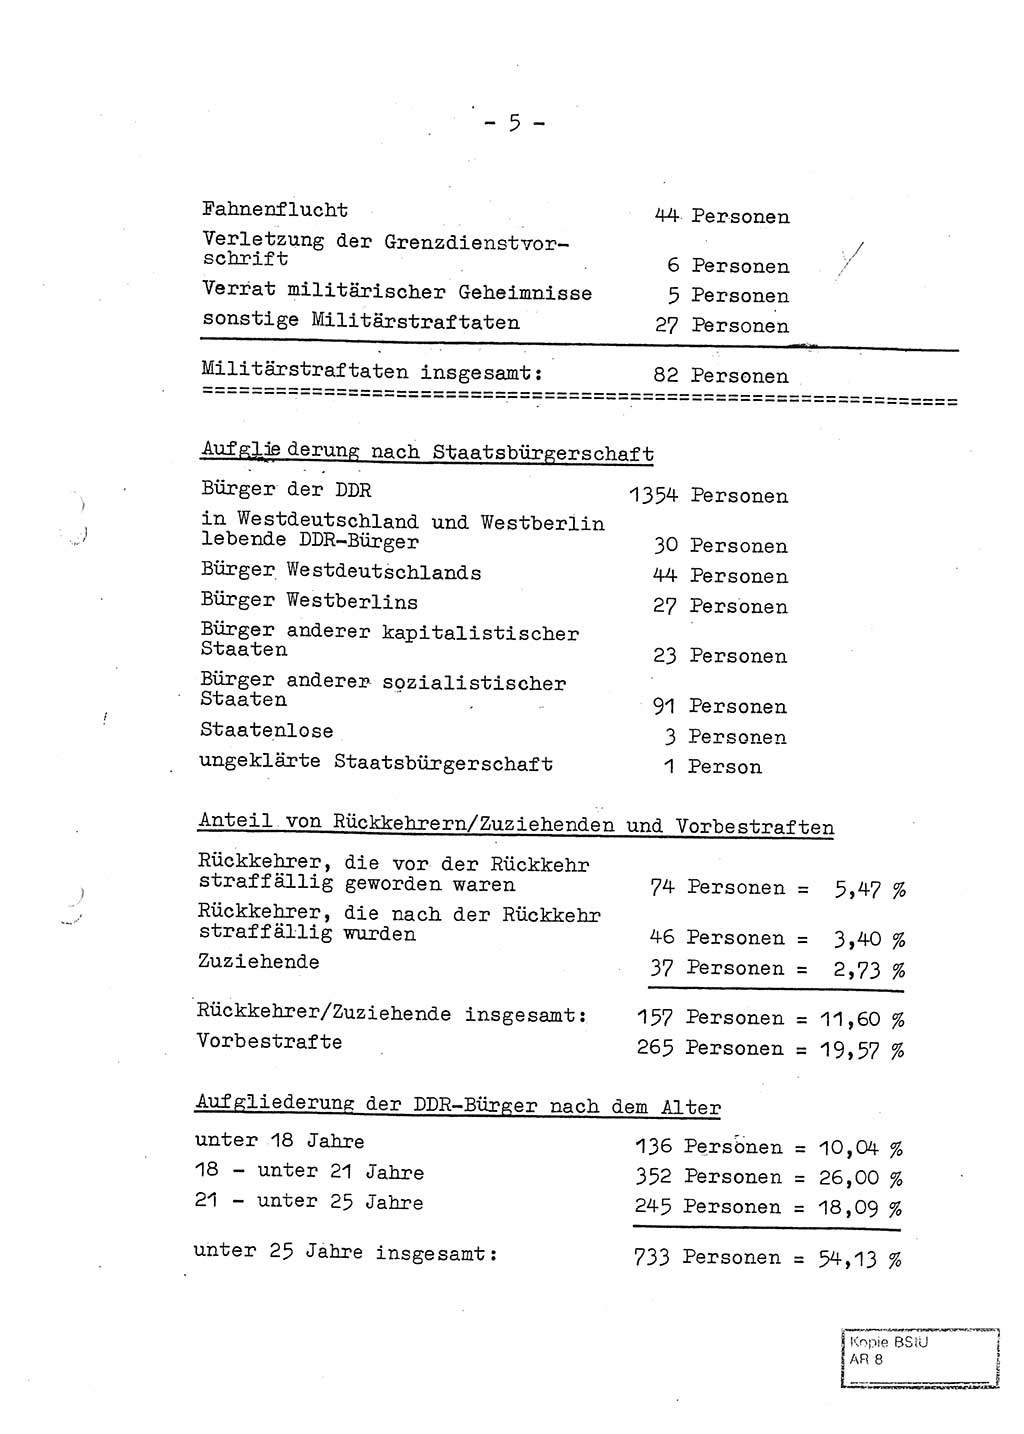 Jahresbericht der Hauptabteilung (HA) Ⅸ 1969 des Ministeriums für Staatssicherheit (MfS) der Deutschen Demokratischen Republik (DDR), Berlin 1970, Seite 5 (J.-Ber. MfS DDR HA Ⅸ /69 1970, S. 5)